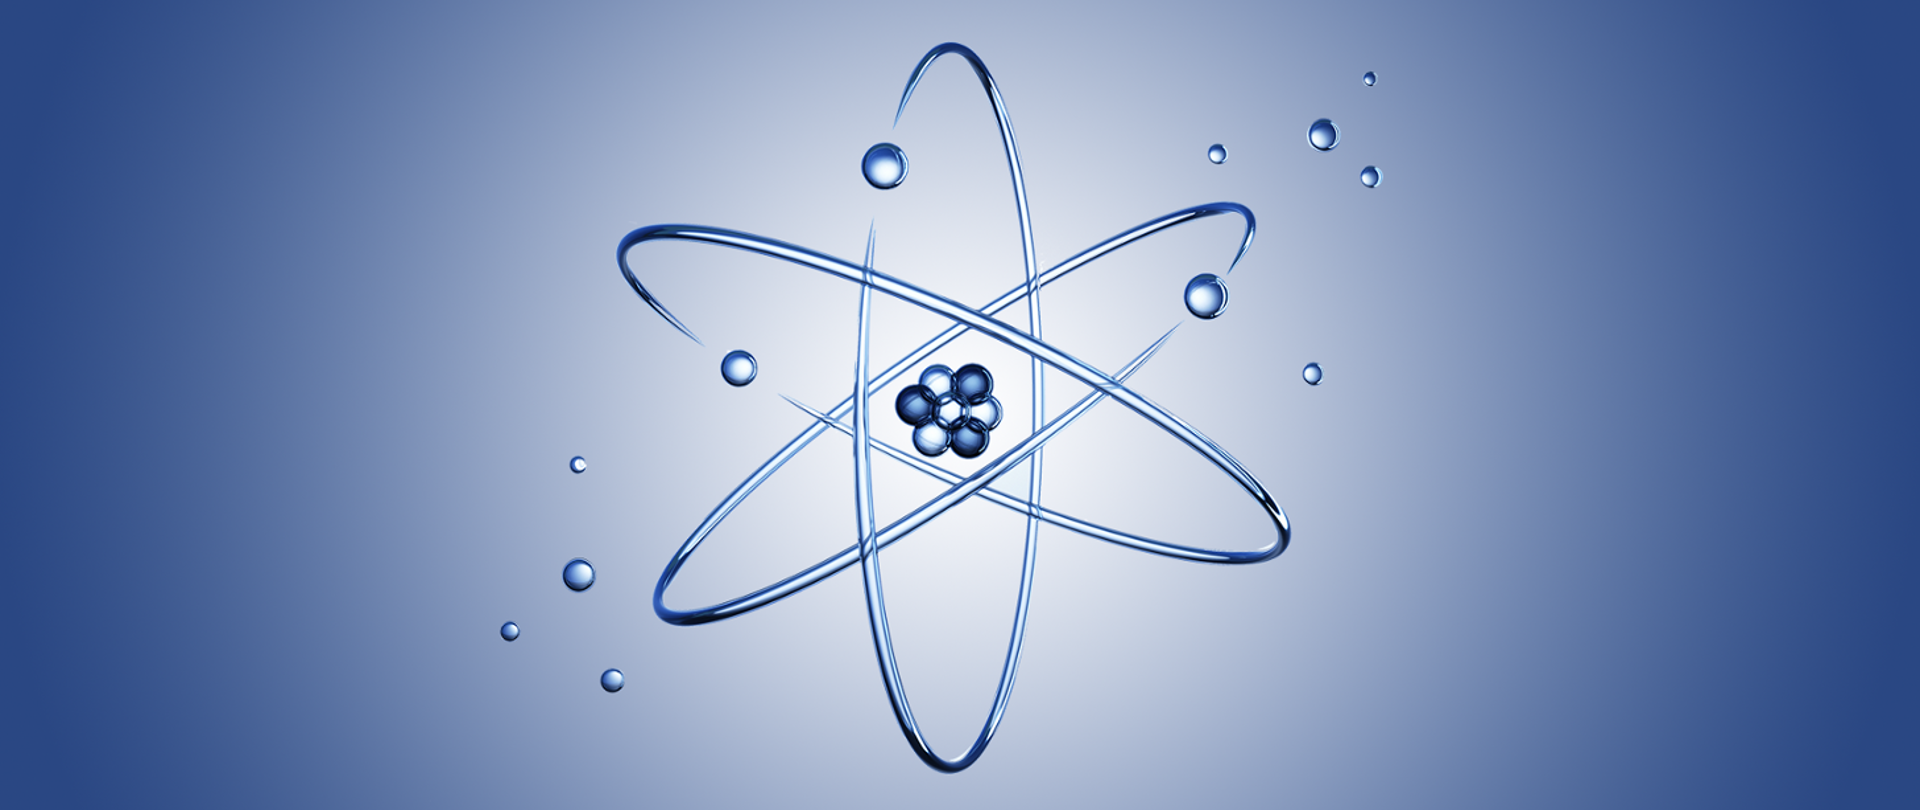 Nakładające się na siebie trzy elipsy, w środku kilka małych okręgów (symbol jądra atomowego).